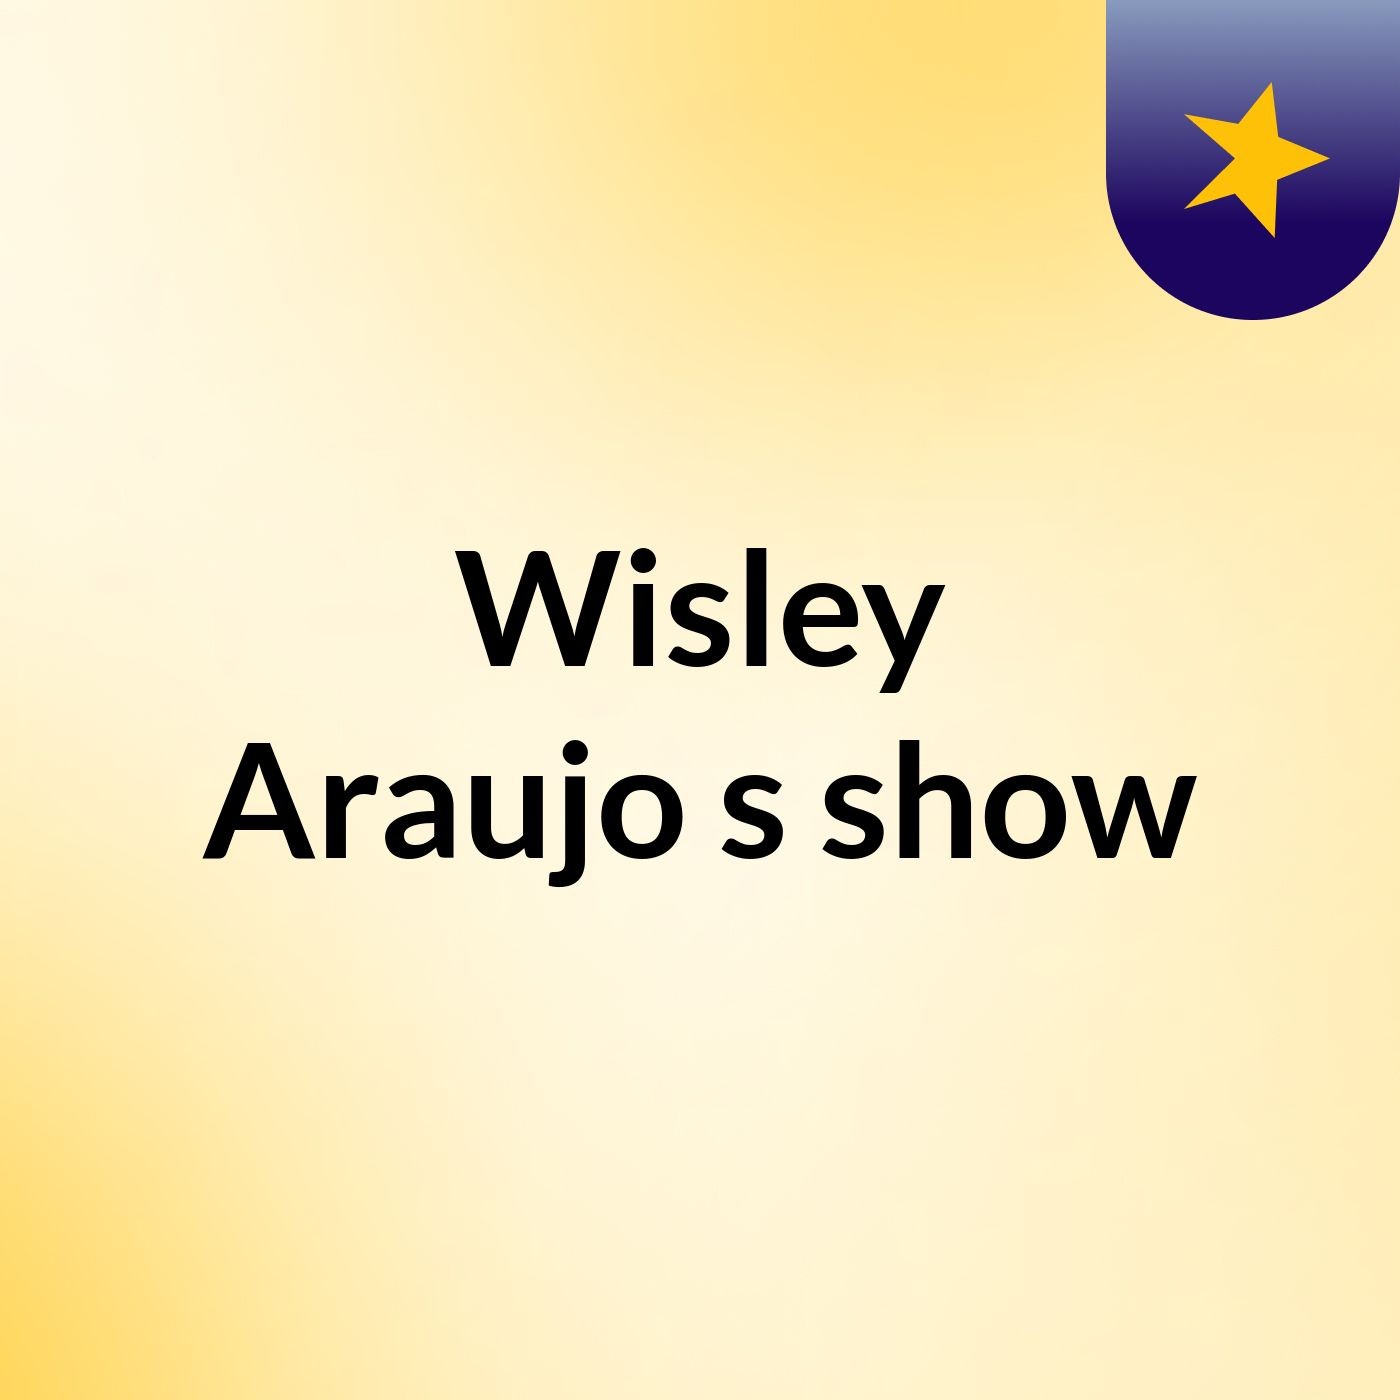 Wisley Araujo's show